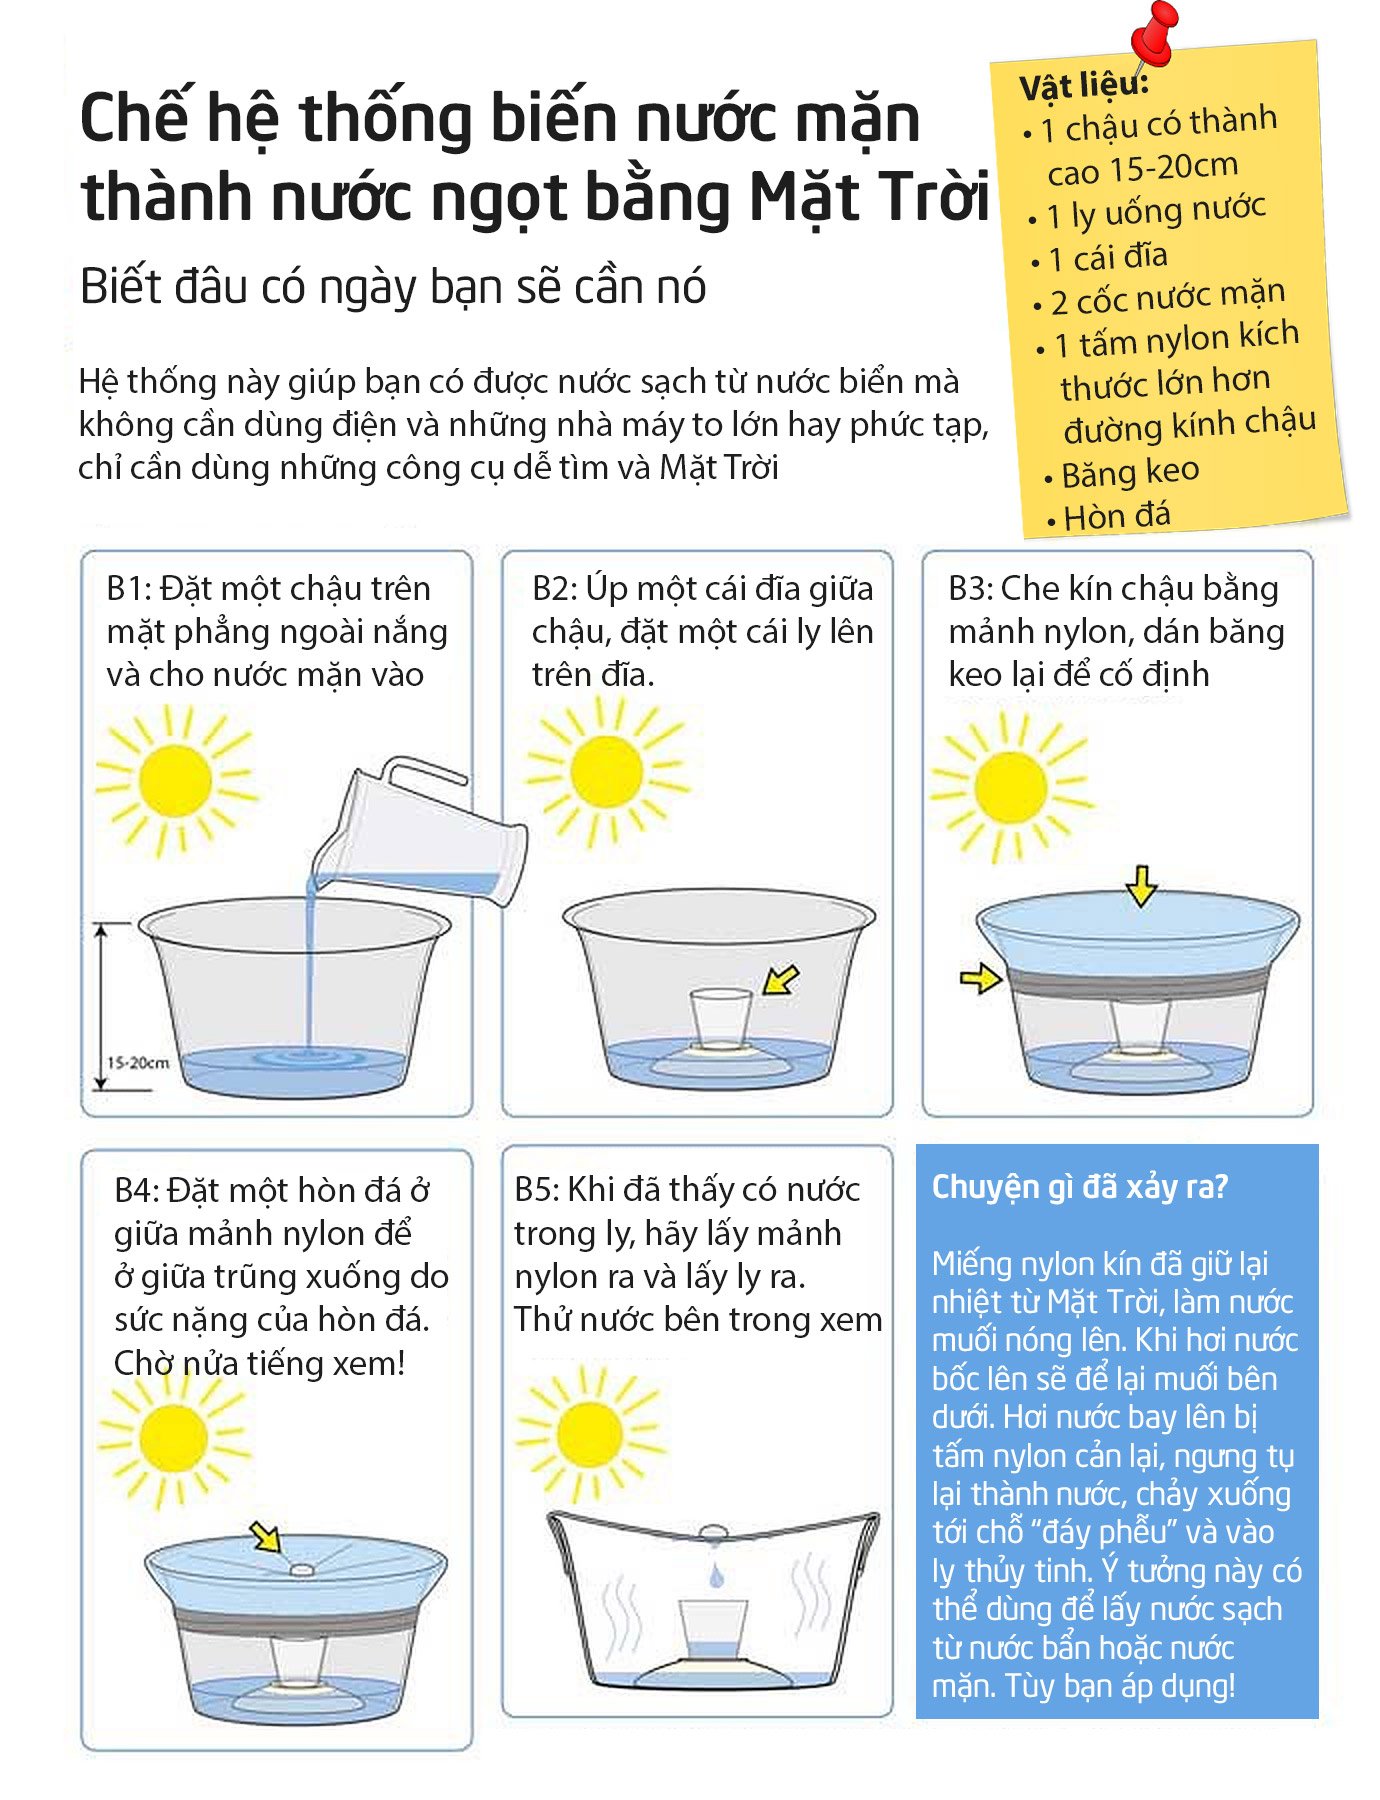 Tận dụng năng lượng Mặt Trời để biến nước mặn thành nước ngọt